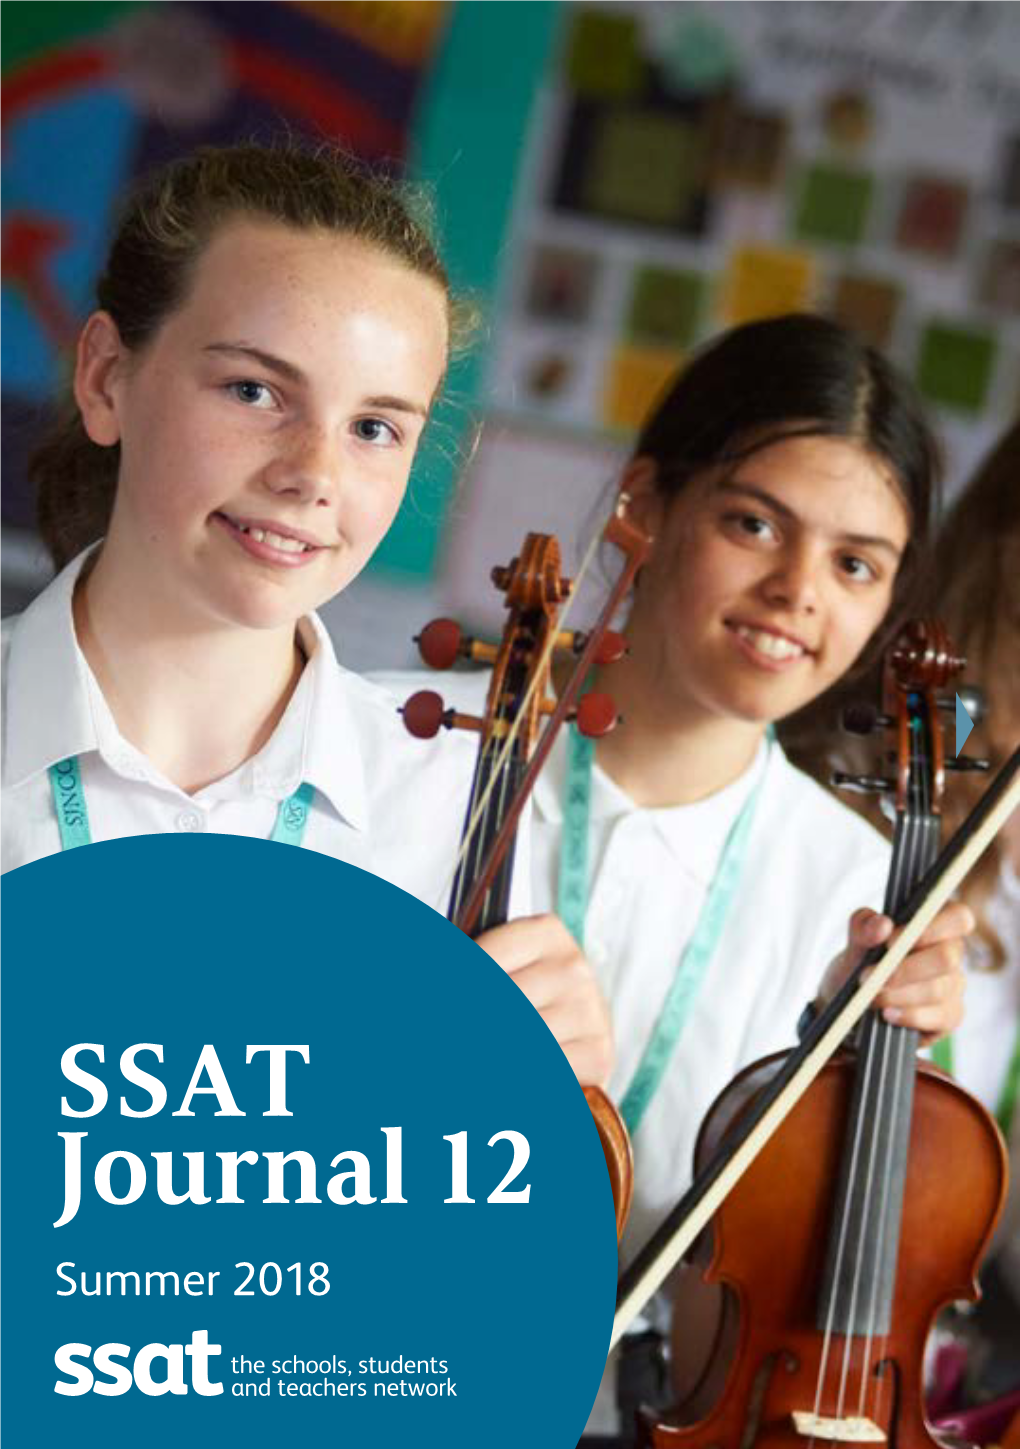 SSAT Journal 12 Summer 2018 Contents